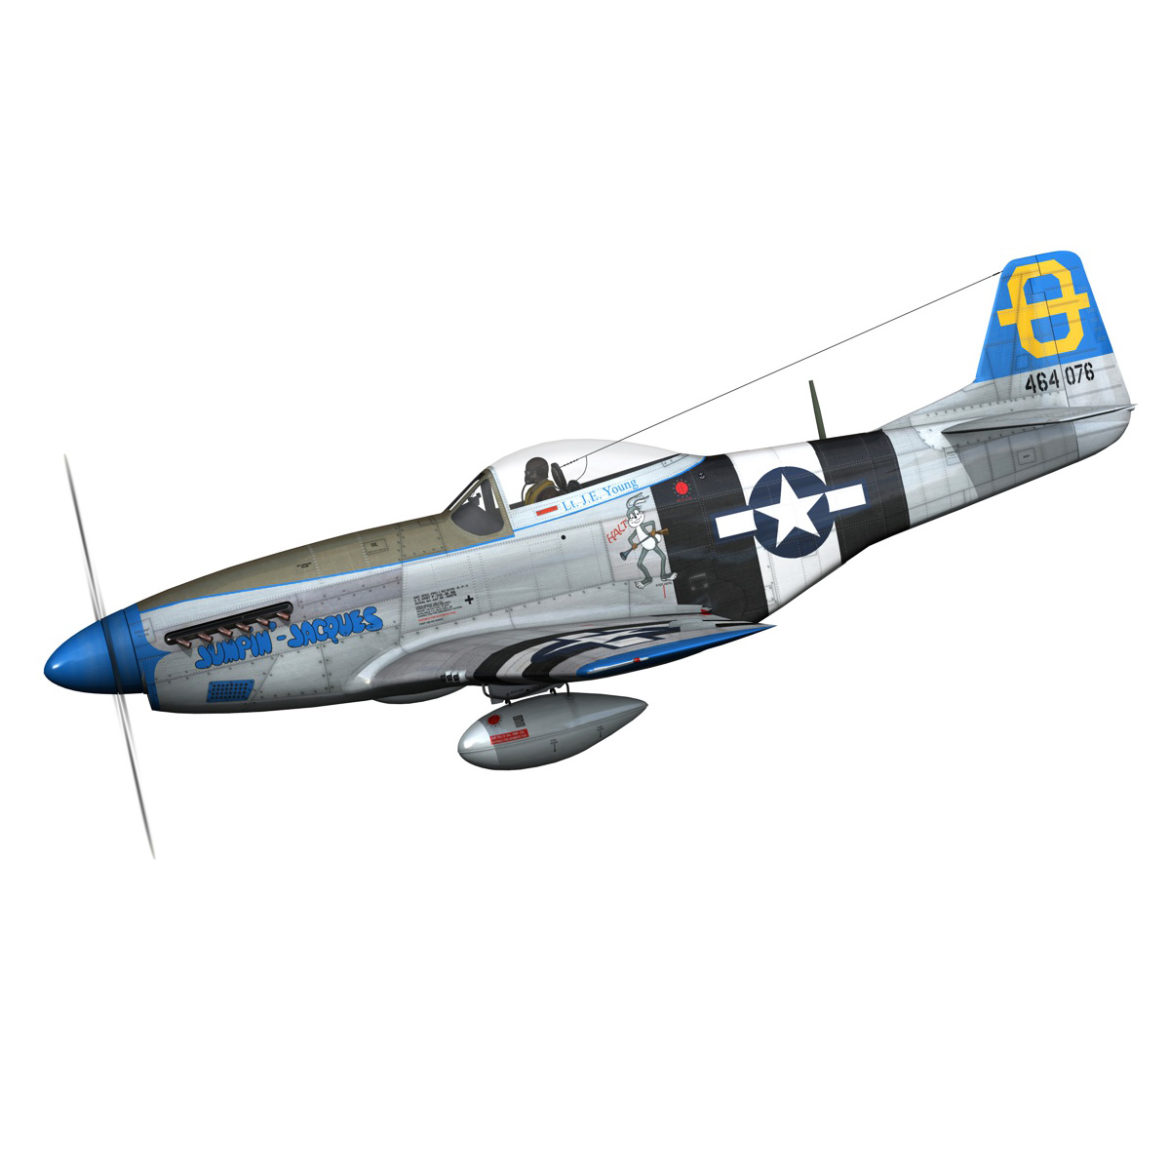 north american p-51d mustang – jumpin jacques 3d model fbx c4d lwo obj 294323